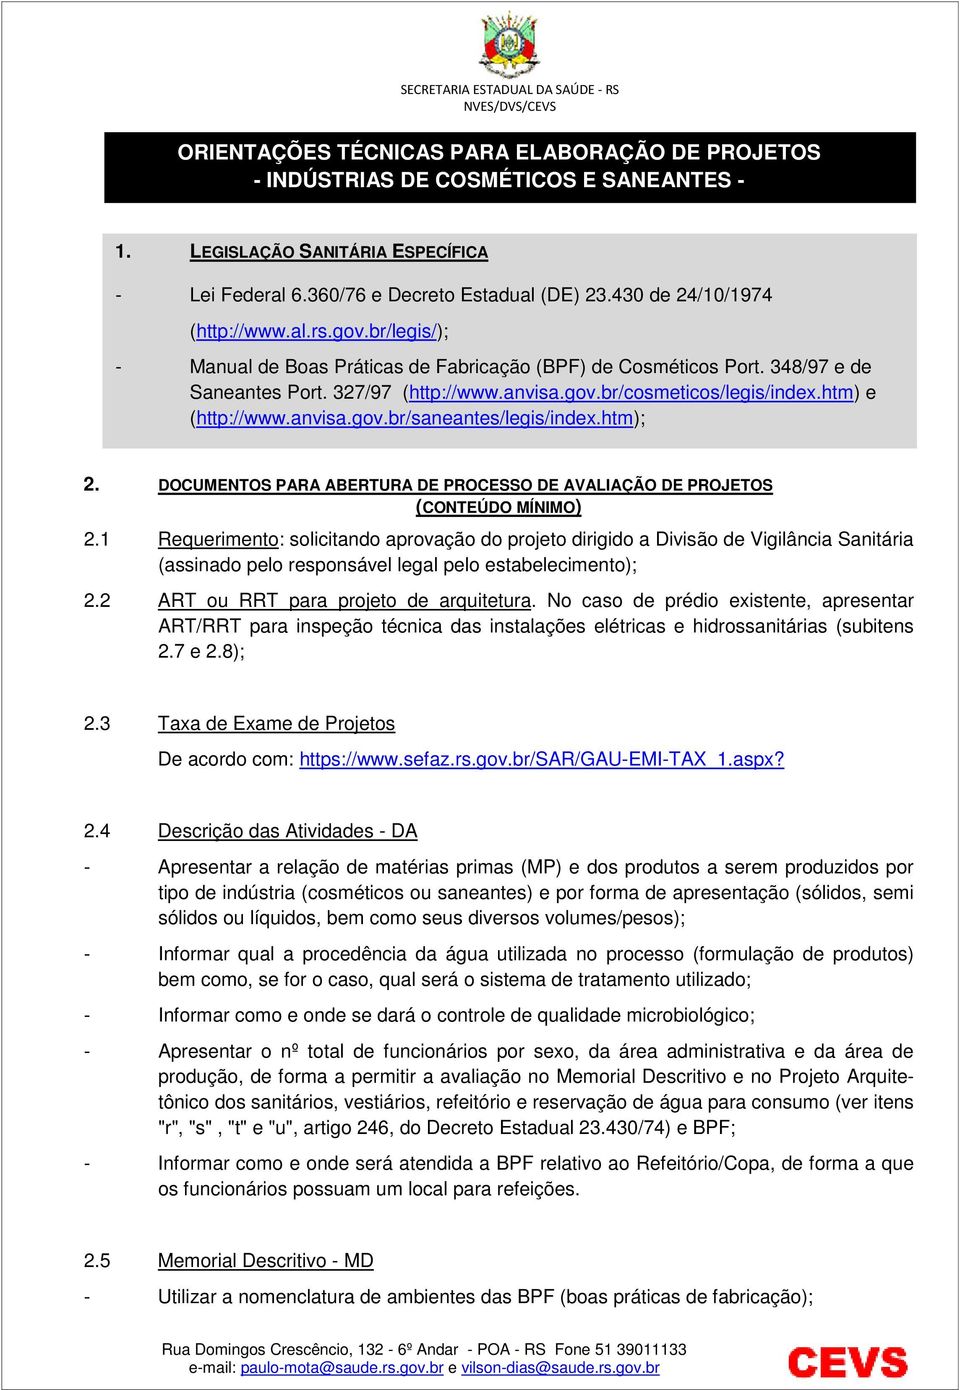 htm) e (http://www.anvisa.gov.br/saneantes/legis/index.htm); 2. DOCUMENTOS PARA ABERTURA DE PROCESSO DE AVALIAÇÃO DE PROJETOS (CONTEÚDO MÍNIMO) 2.